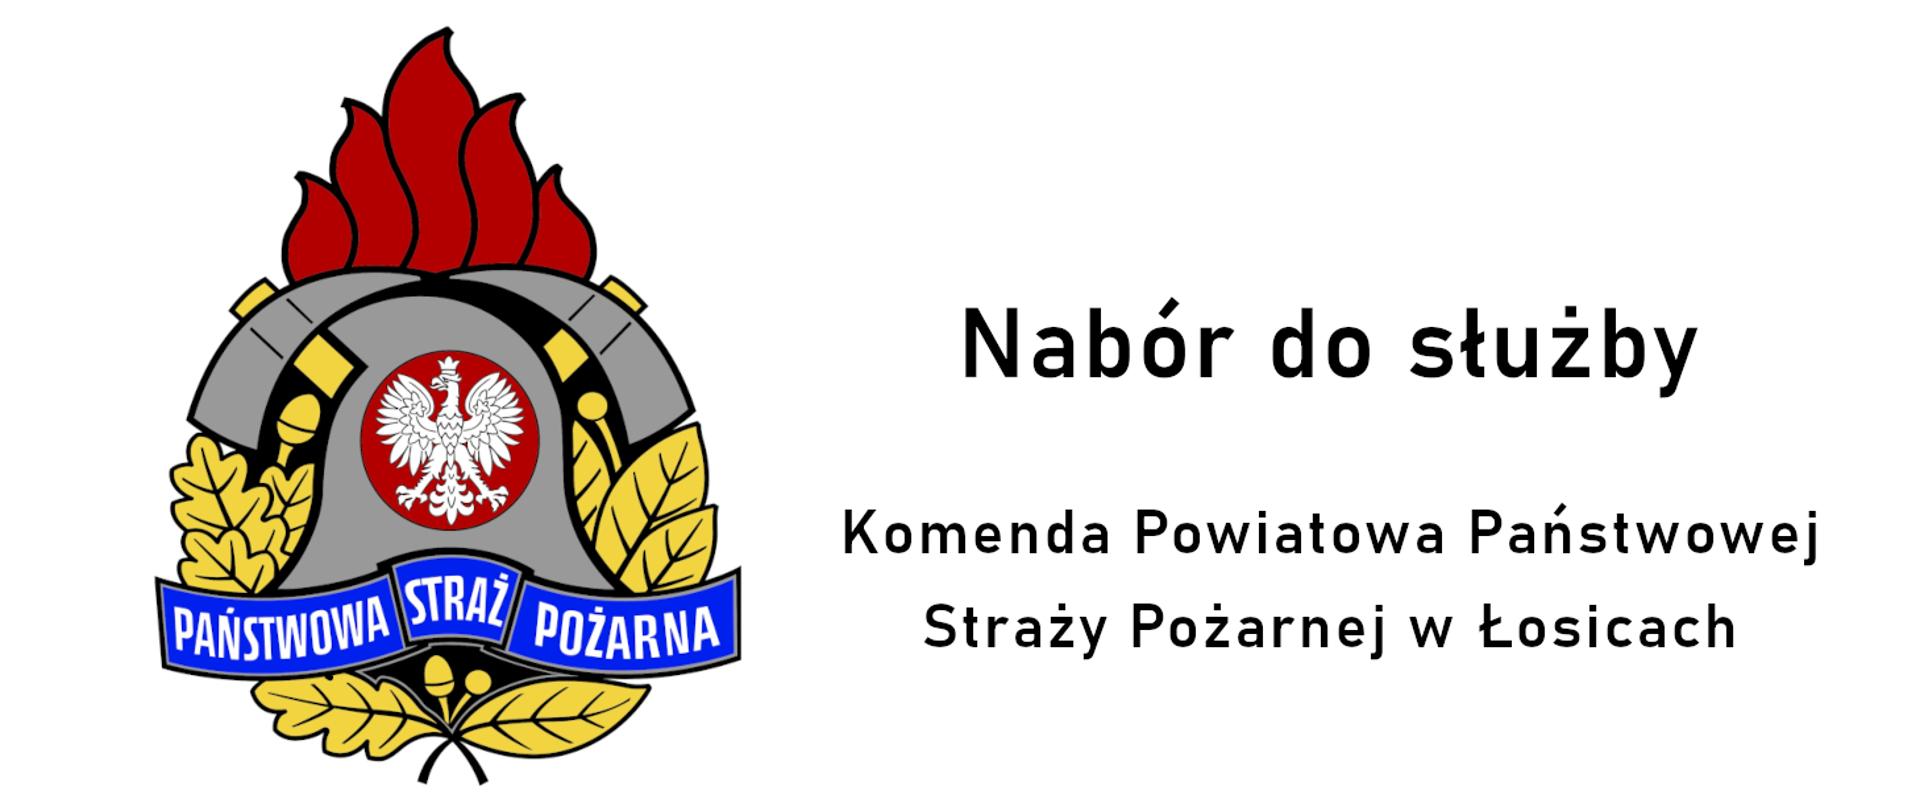 docelowe miejsce służby: Jednostka Ratowniczo - Gaśnicza w Łosicach